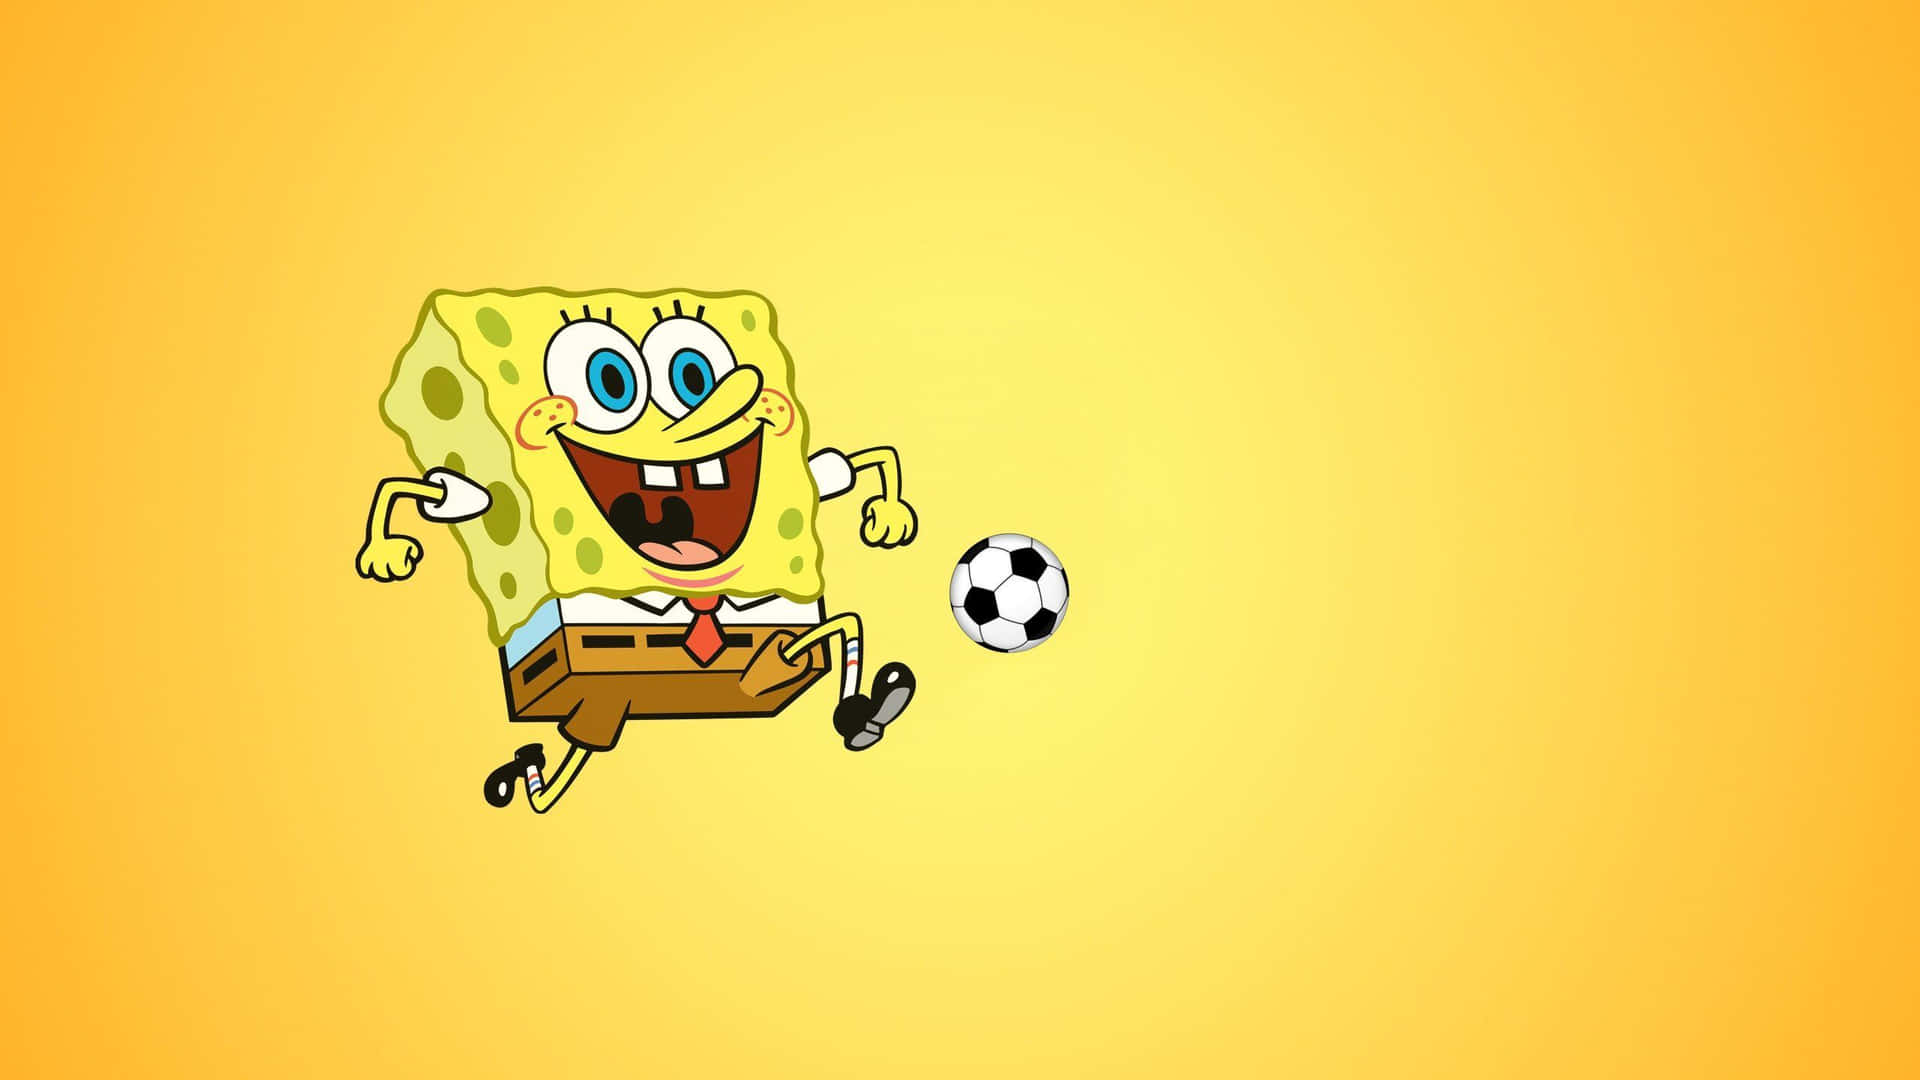 Estéticade Balón De Fútbol Para Escritorio De Spongebob. Fondo de pantalla